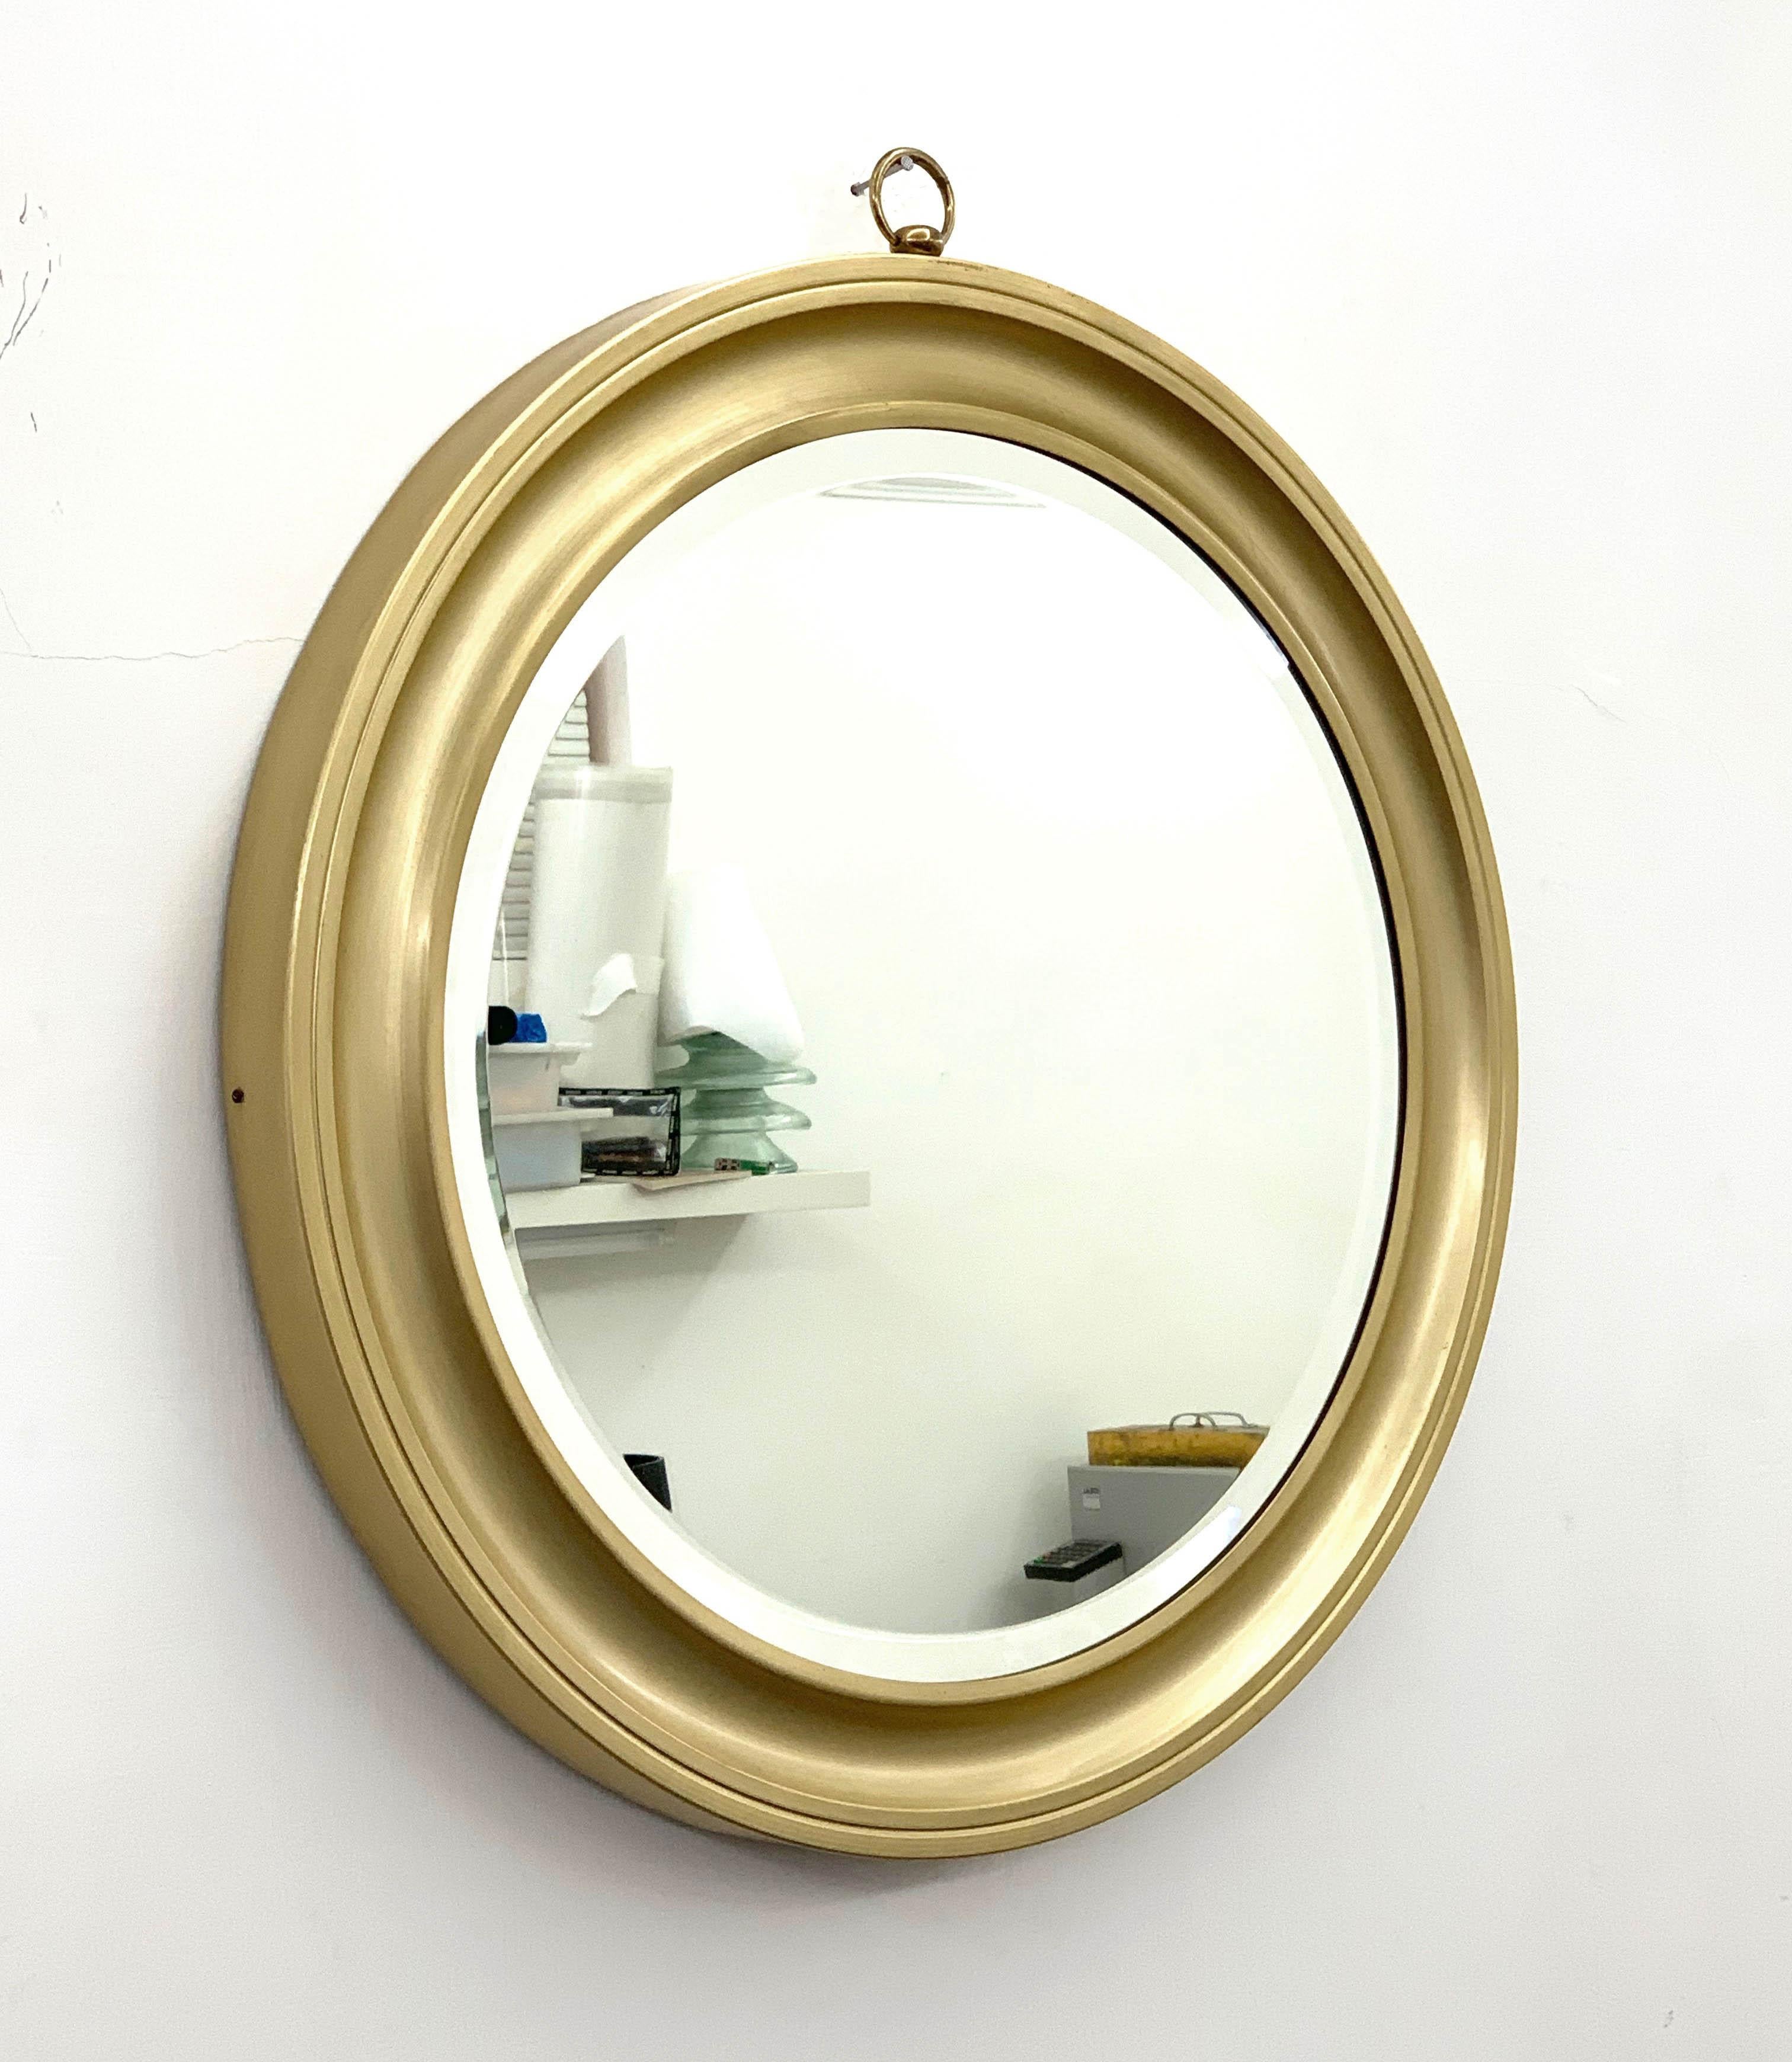 Rare et magnifique miroir moderniste en aluminium doré. L'article a été produit en Italie dans les années 1960.

Étonnant miroir mural attribué à Sergio Mazza pour Artemide.

Ce miroir original a un centre concave qui crée de la profondeur et de